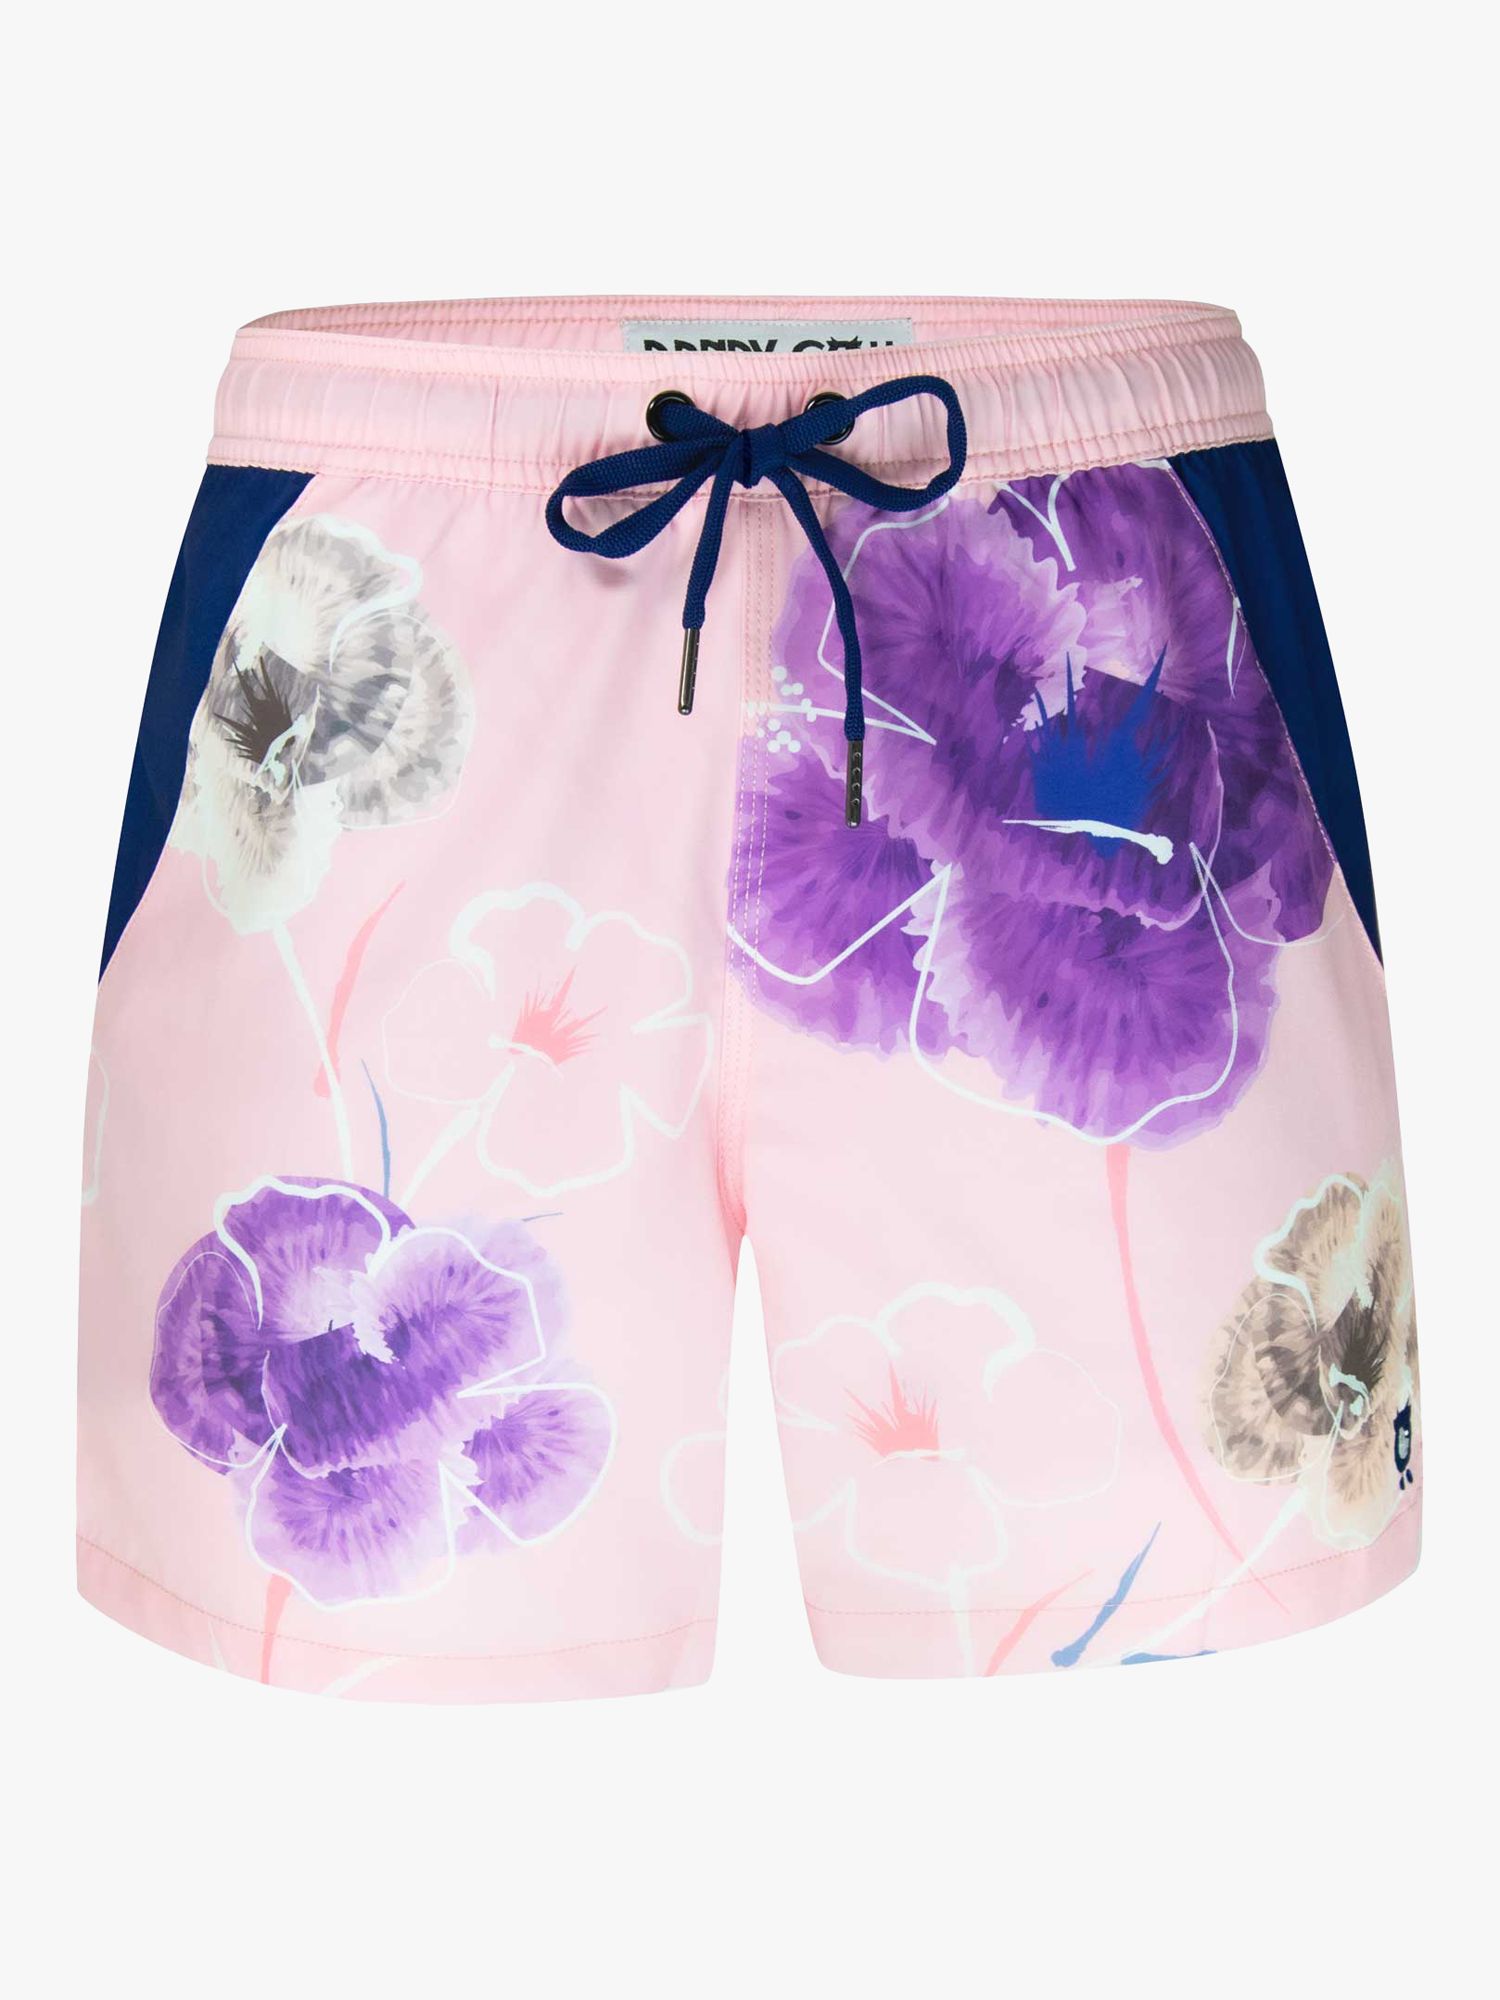 Randy Cow Floral Print Swim Shorts, Pink/Multi, XS